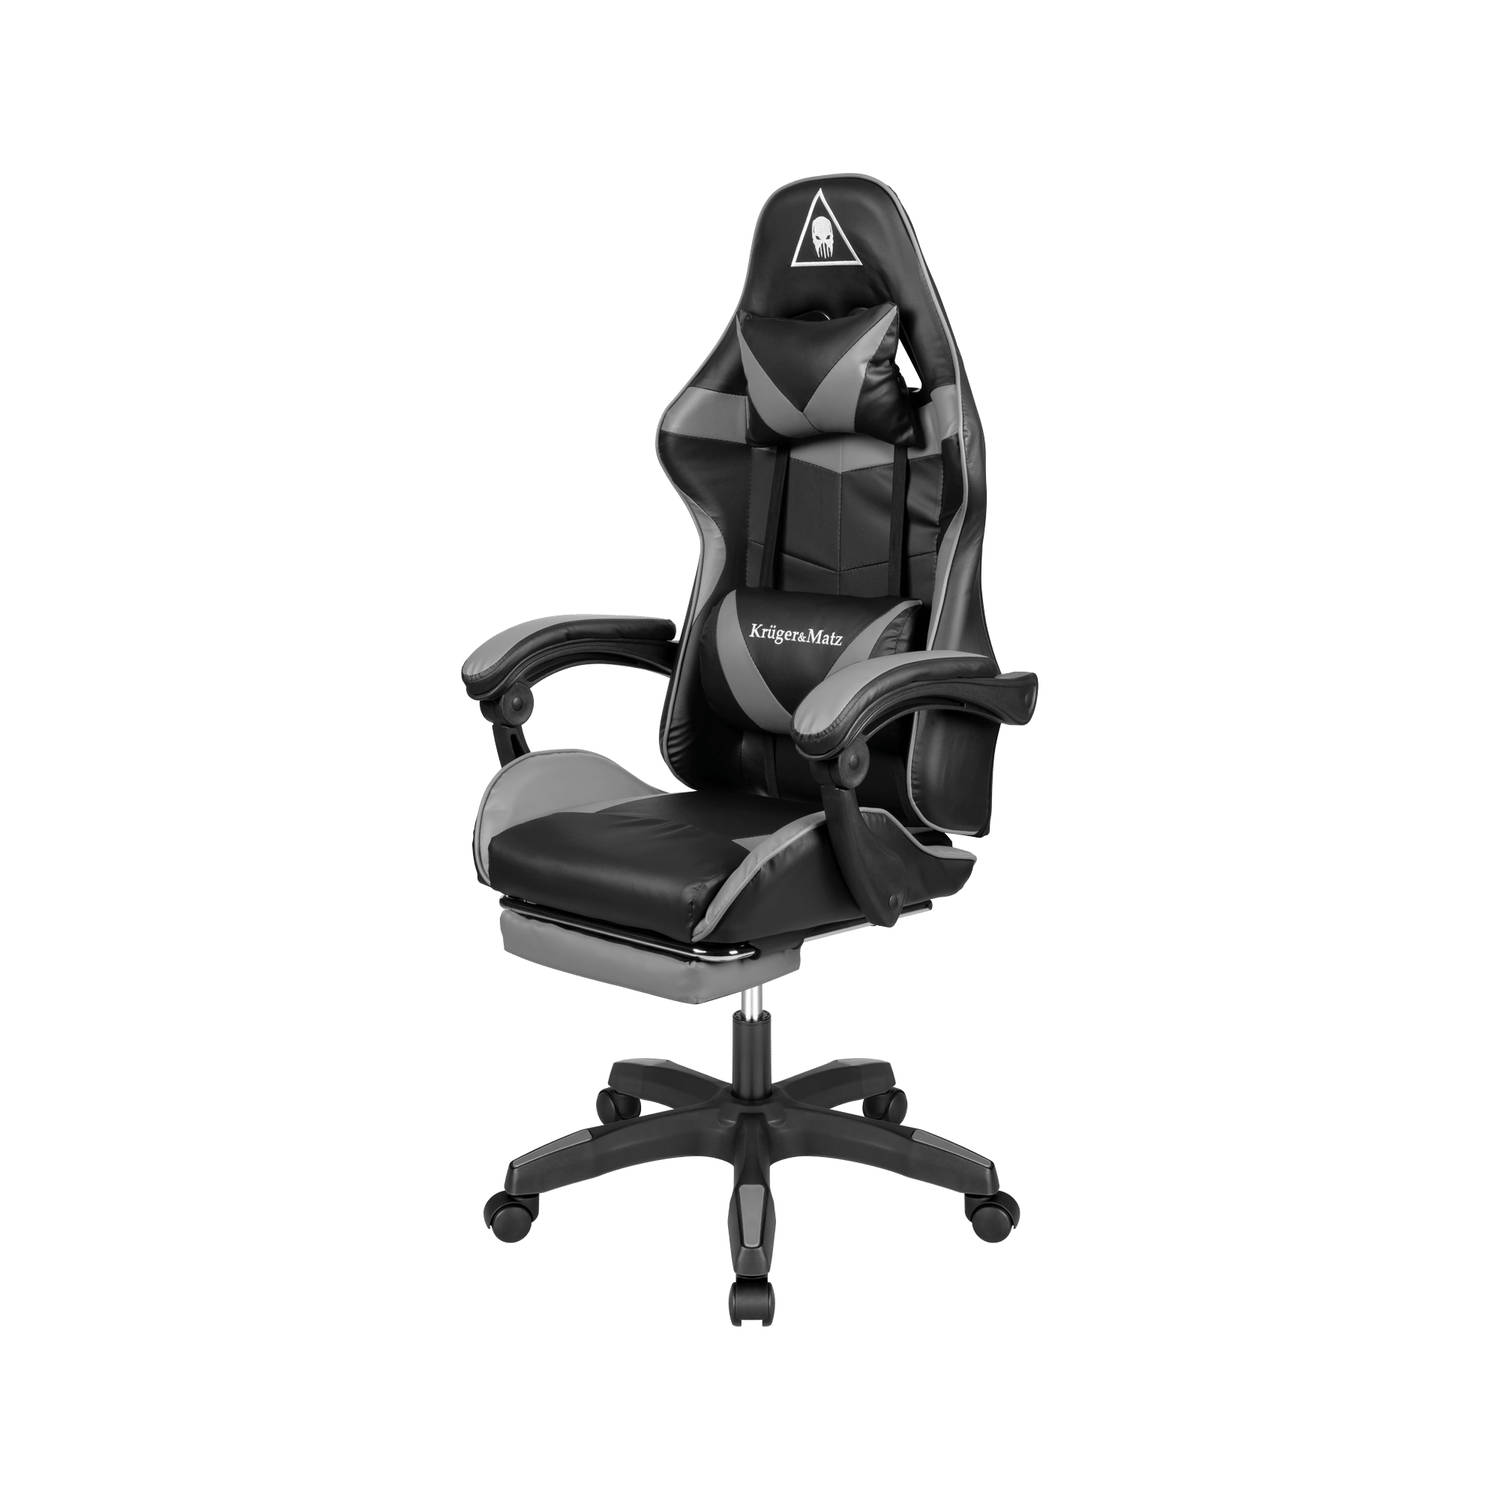 Krüger&Matz KM0790GREY - Warrior GX-150 gaming stoel, grijs-zwart